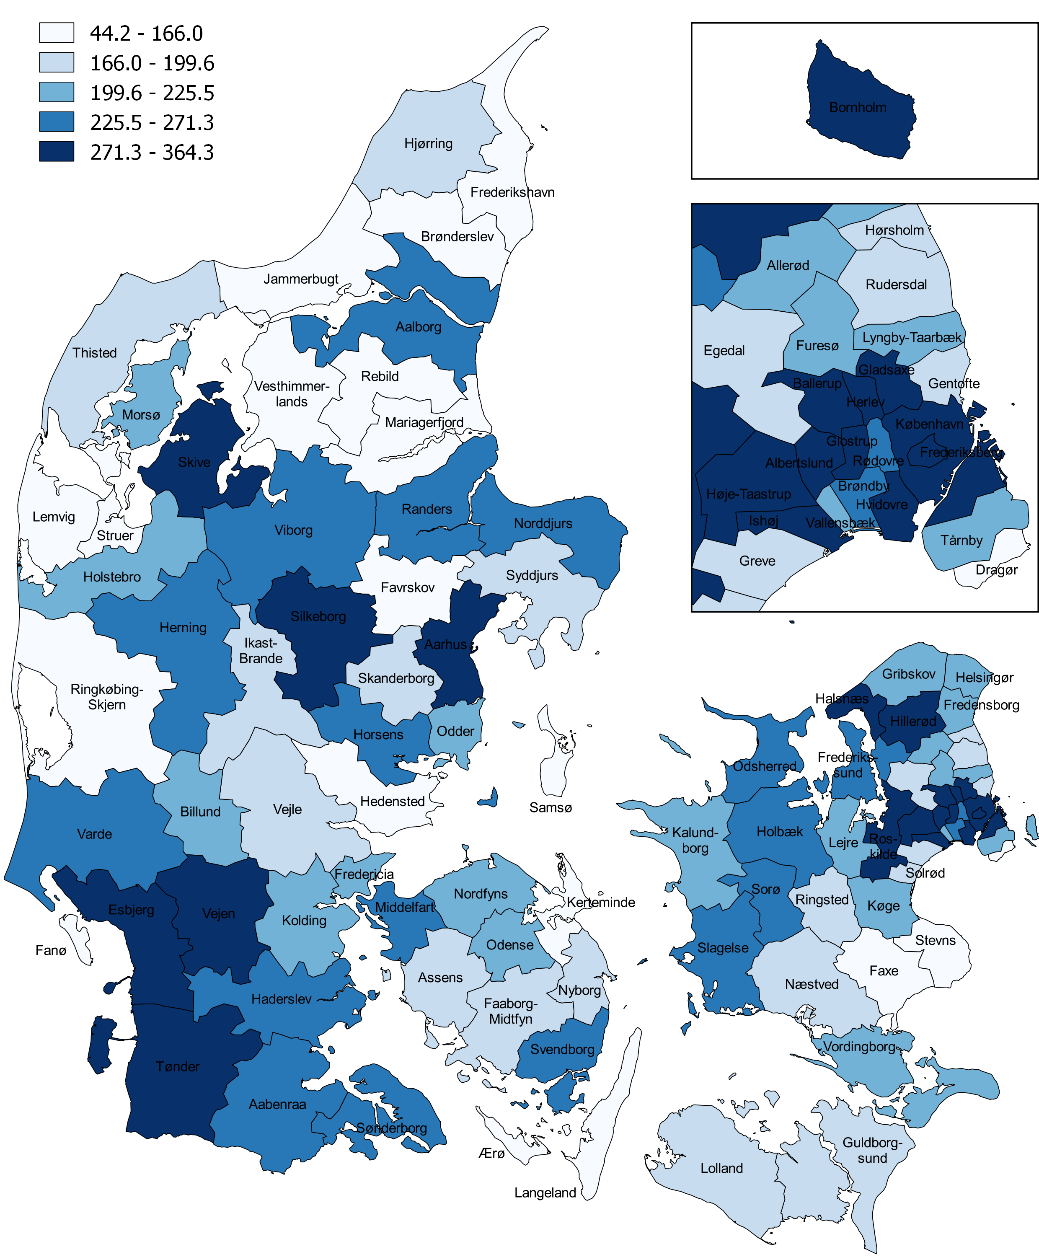 Aktiviteten i psykiatrien er størst i hovedstadsområdet, Sønderjylland og enkelte kommuner i Midtjylland jf. figur 5.